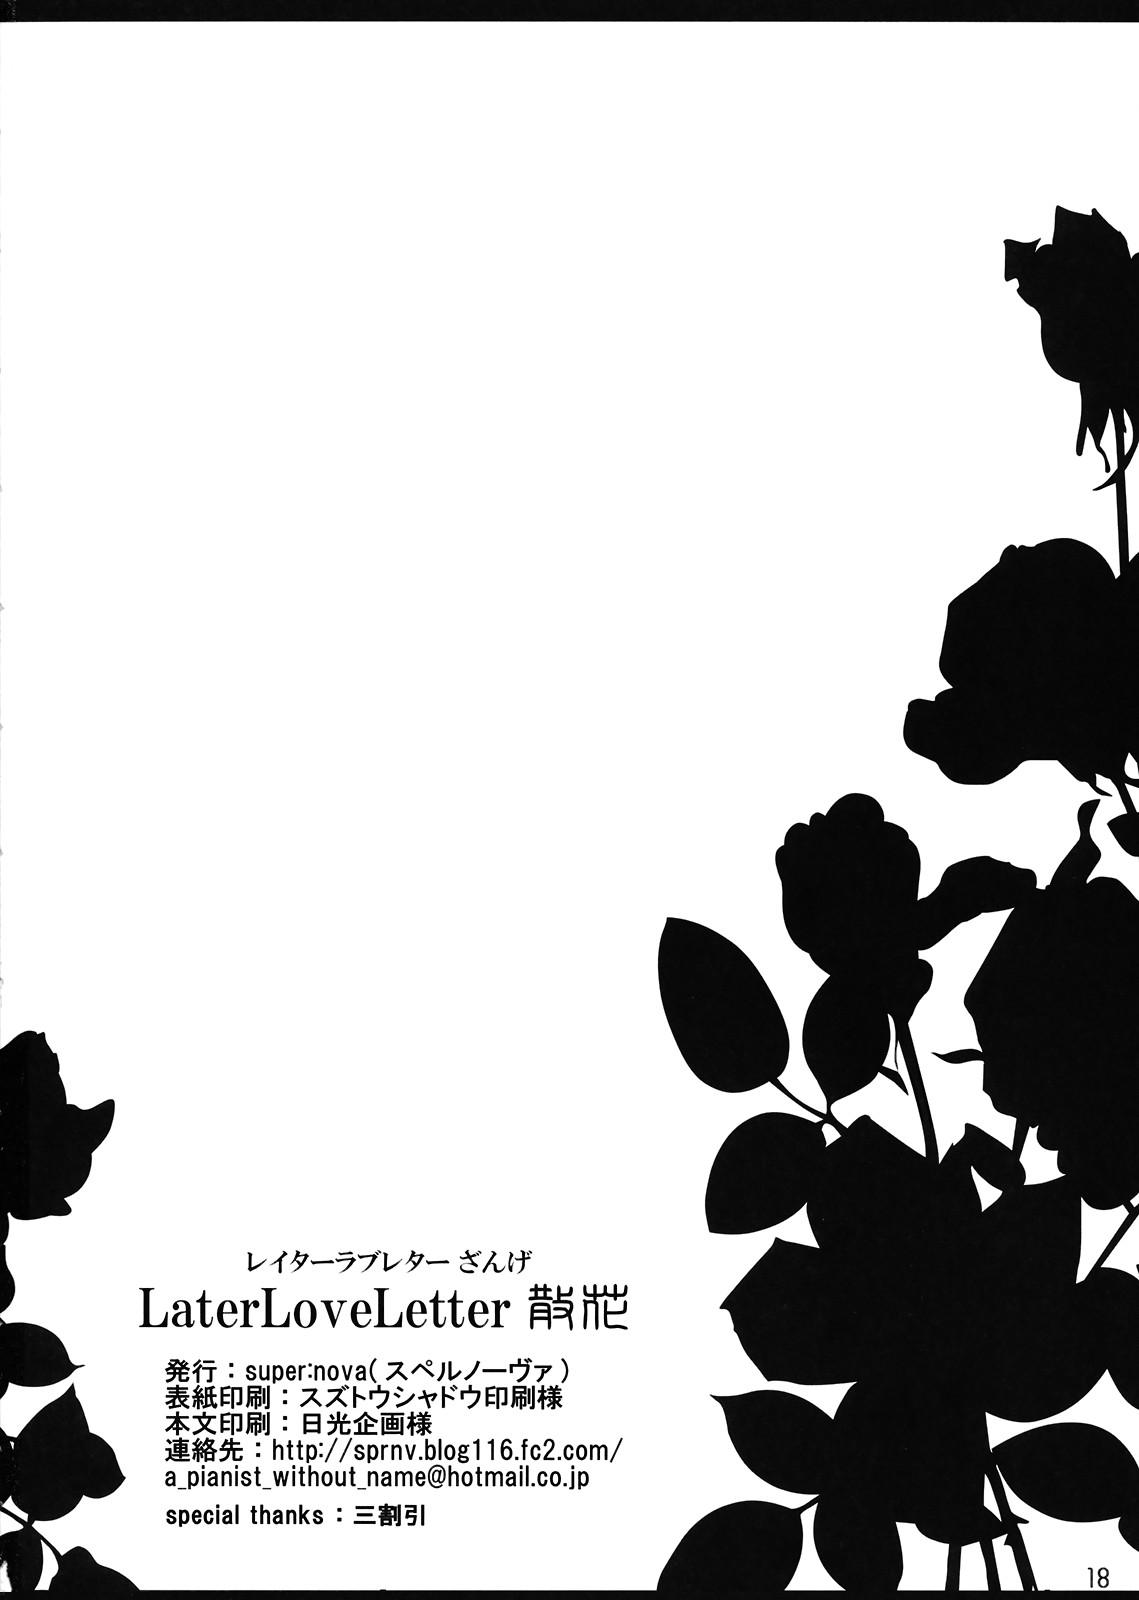 Later Love Letter Zange 16